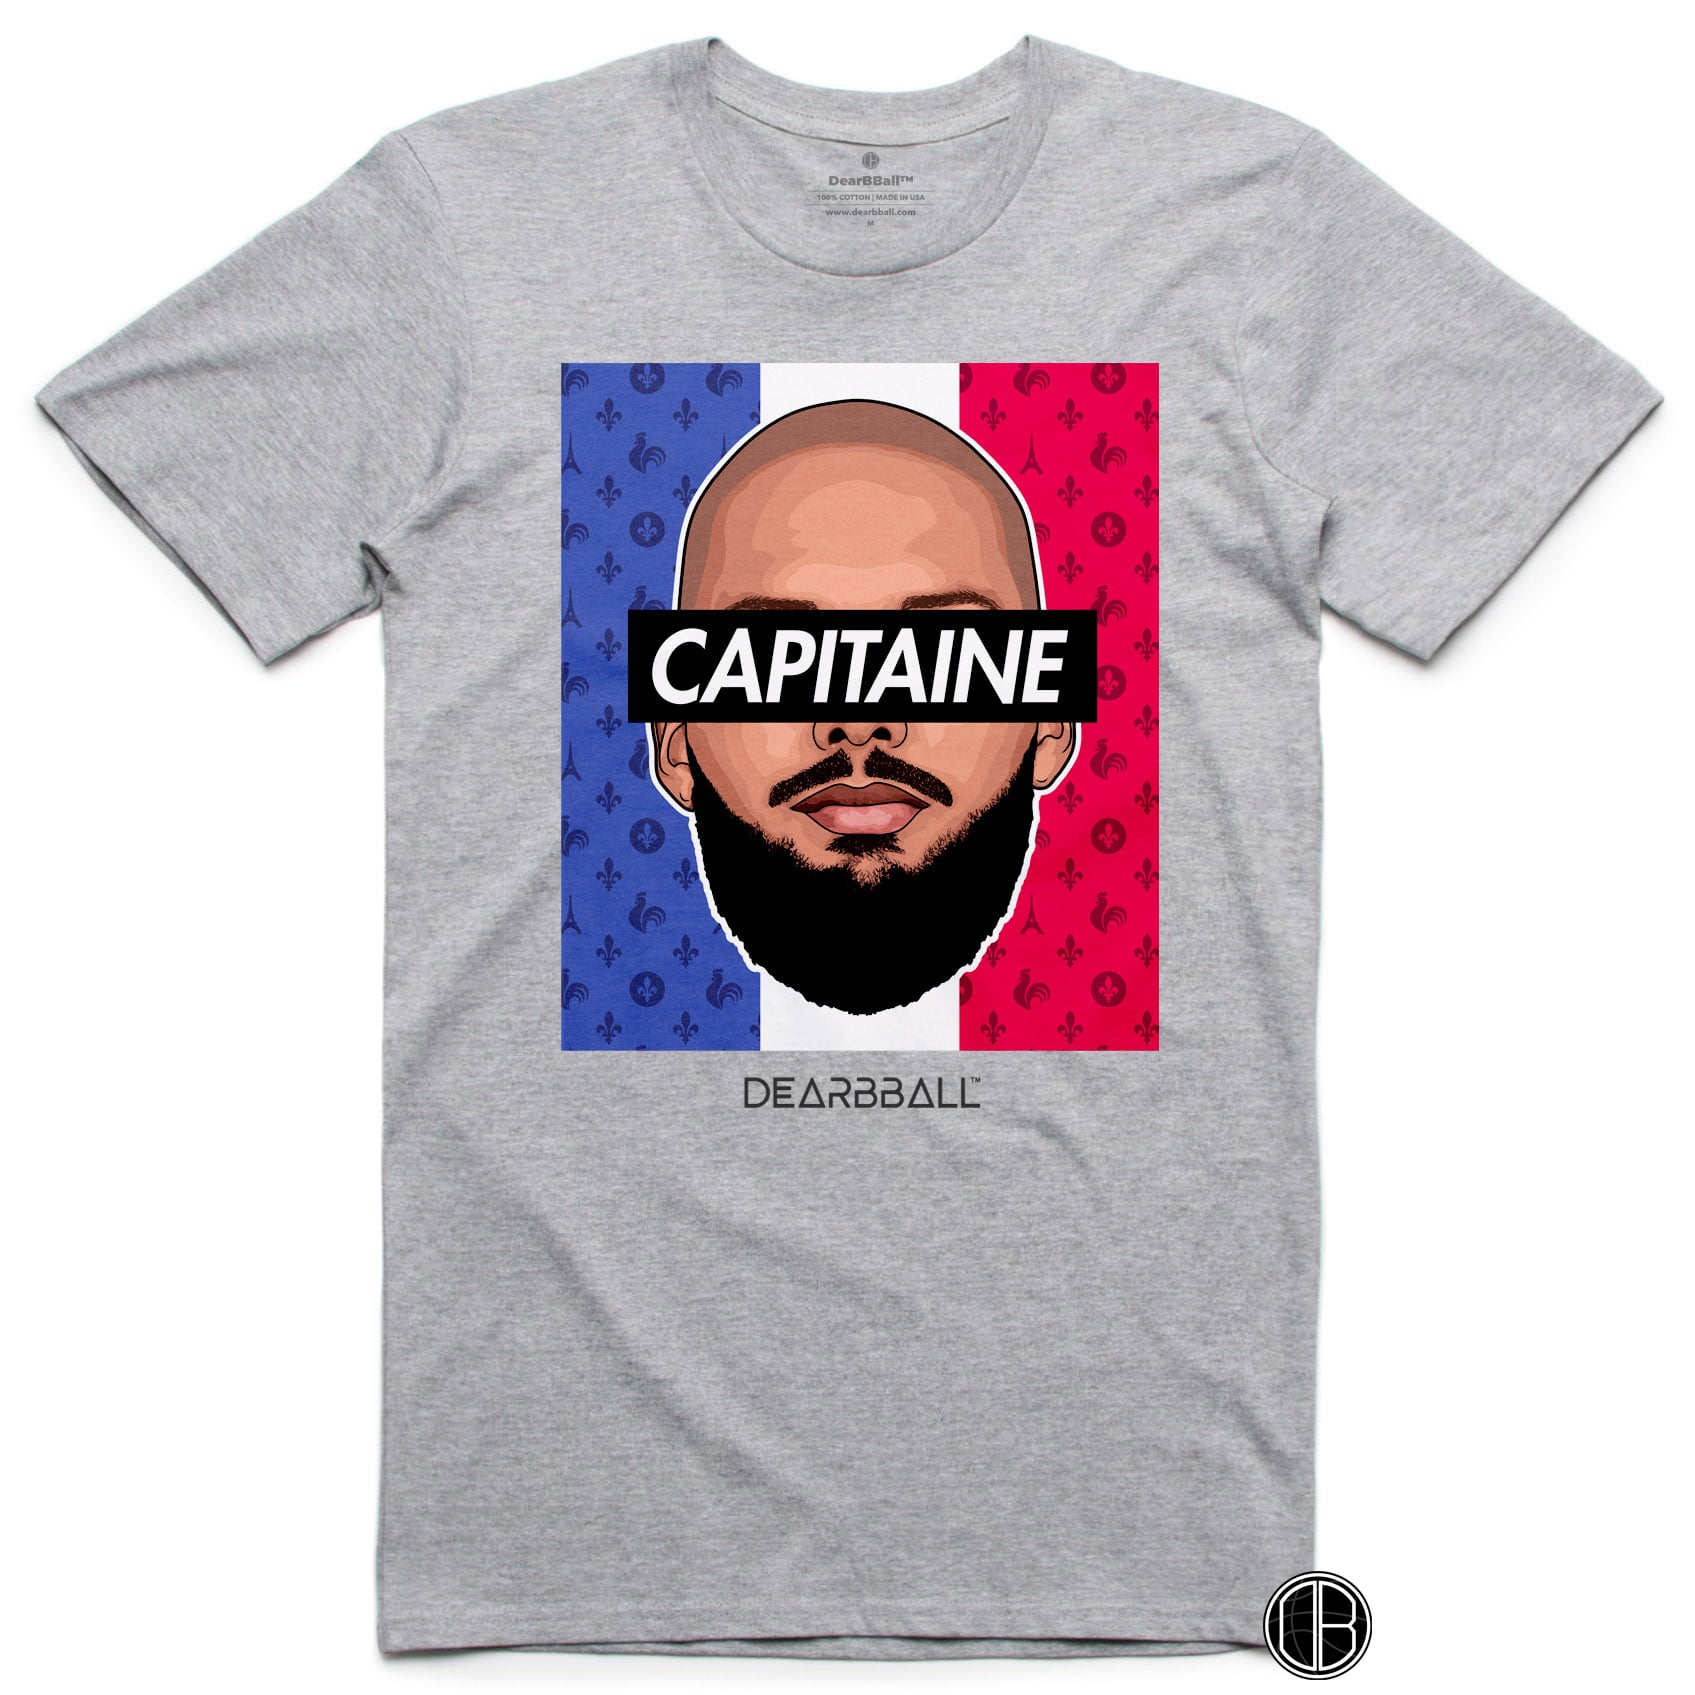 Camiseta DearBBall - CAPTAIN Emblemes Edición Francia